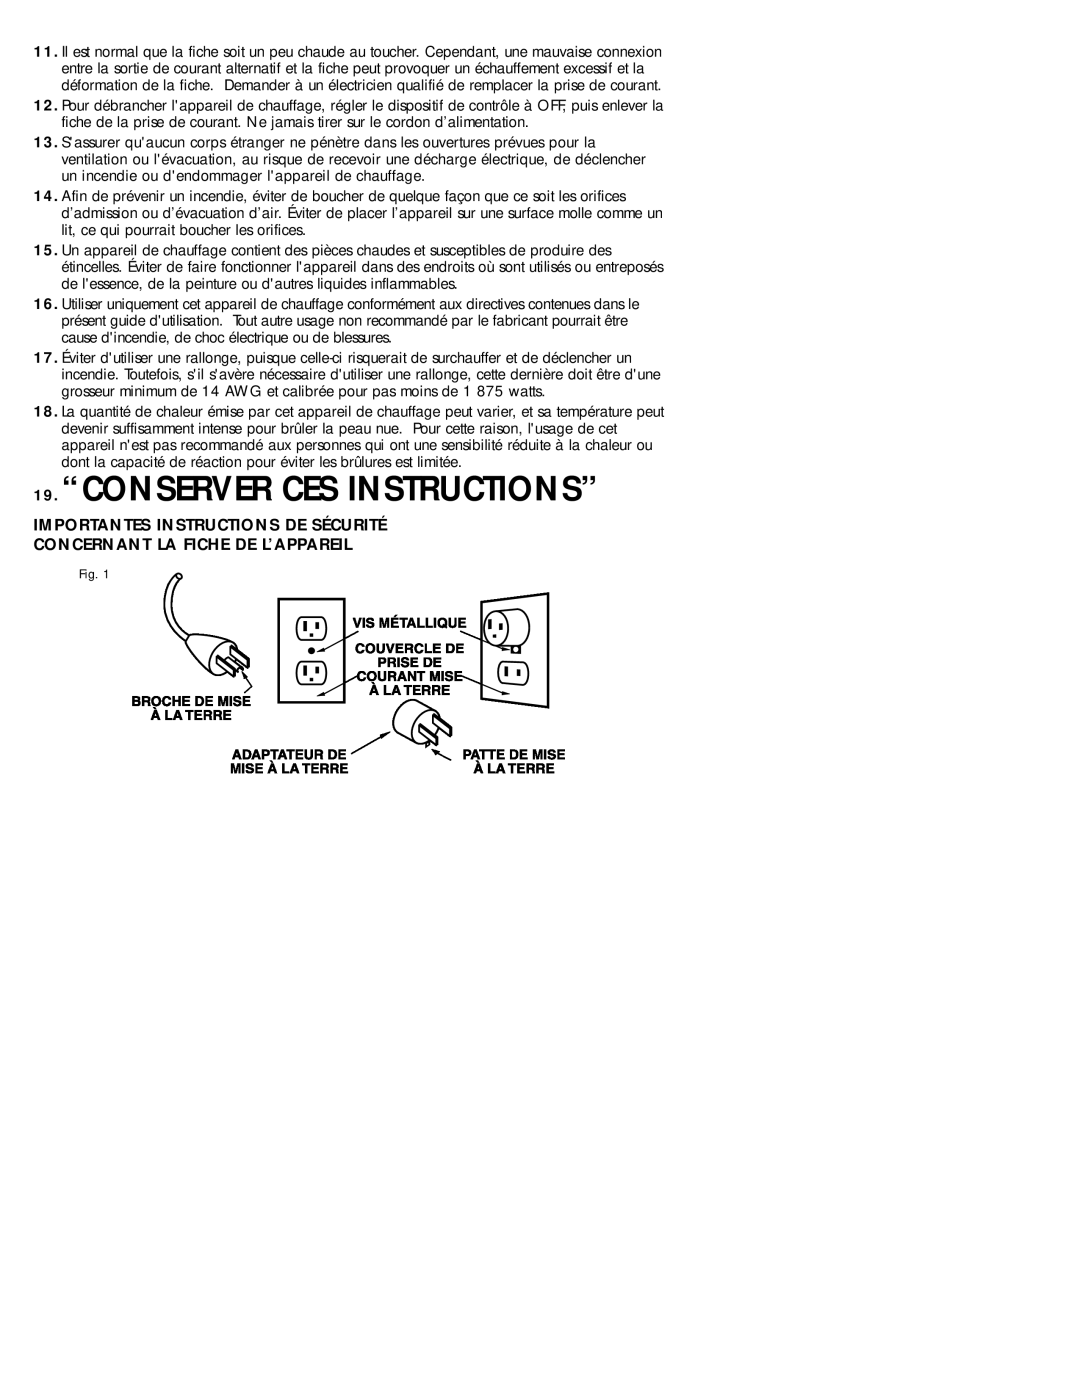 Honeywell HZ-614 19.“CONSERVER CES INSTRUCTIONS”, Importantes Instructions De Sécurité, Concernant La Fiche De L’Appareil 